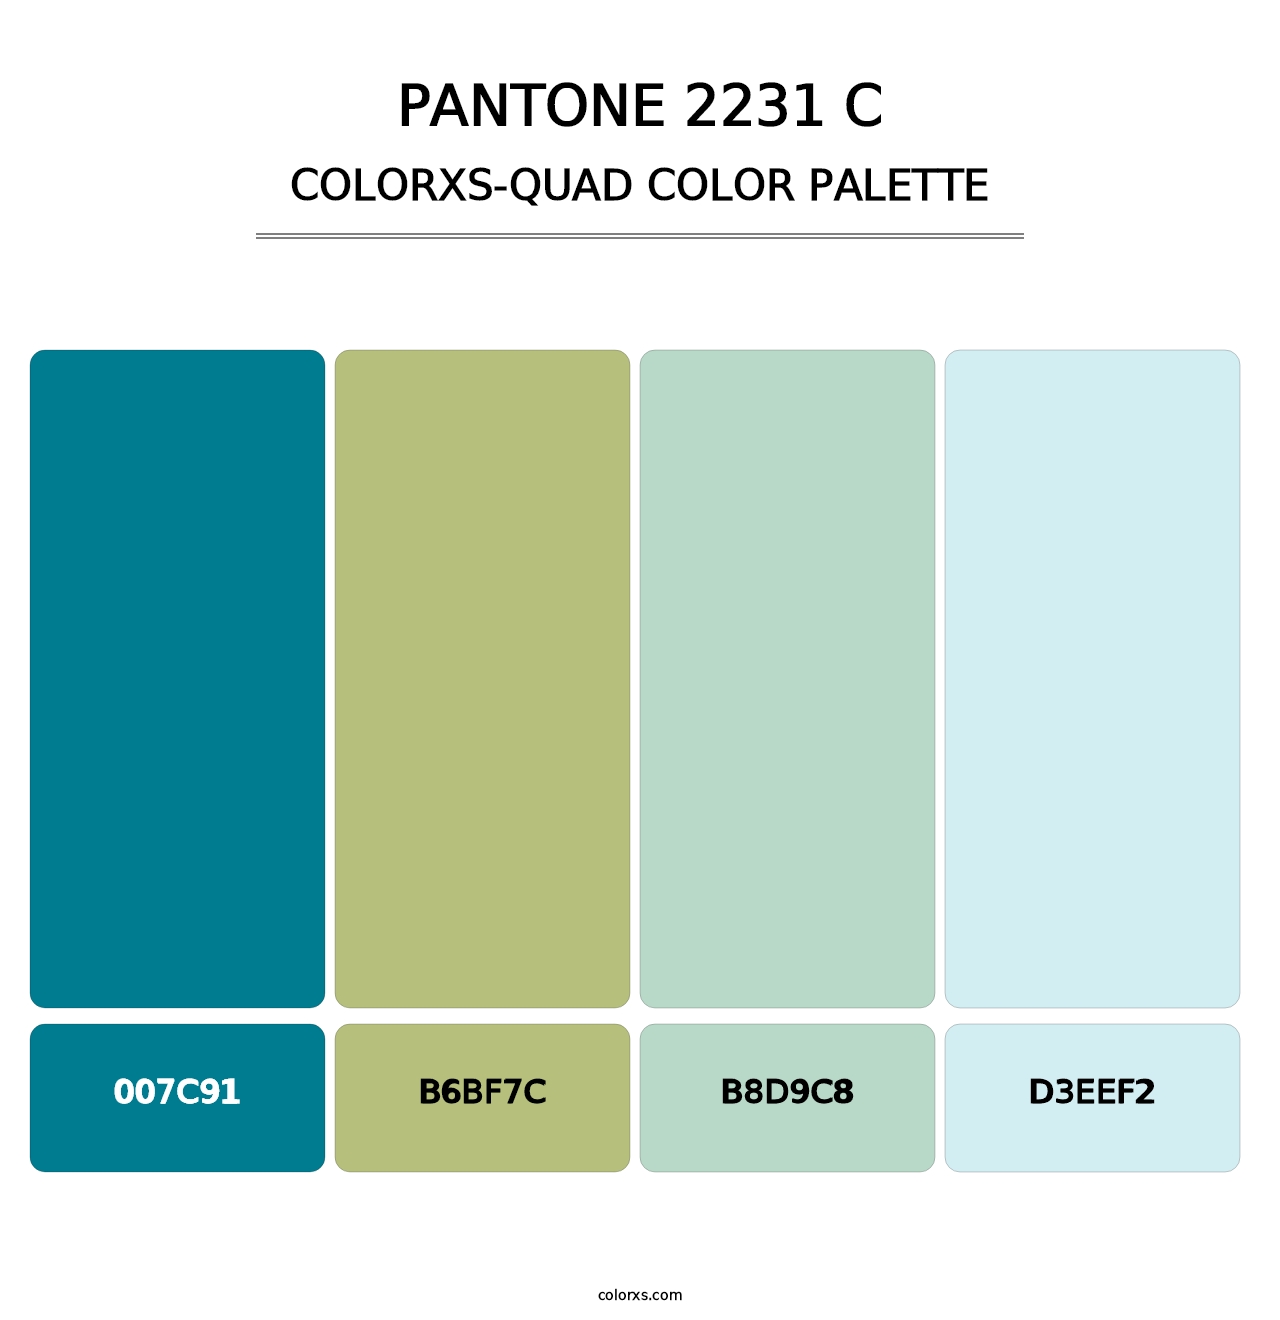 PANTONE 2231 C - Colorxs Quad Palette